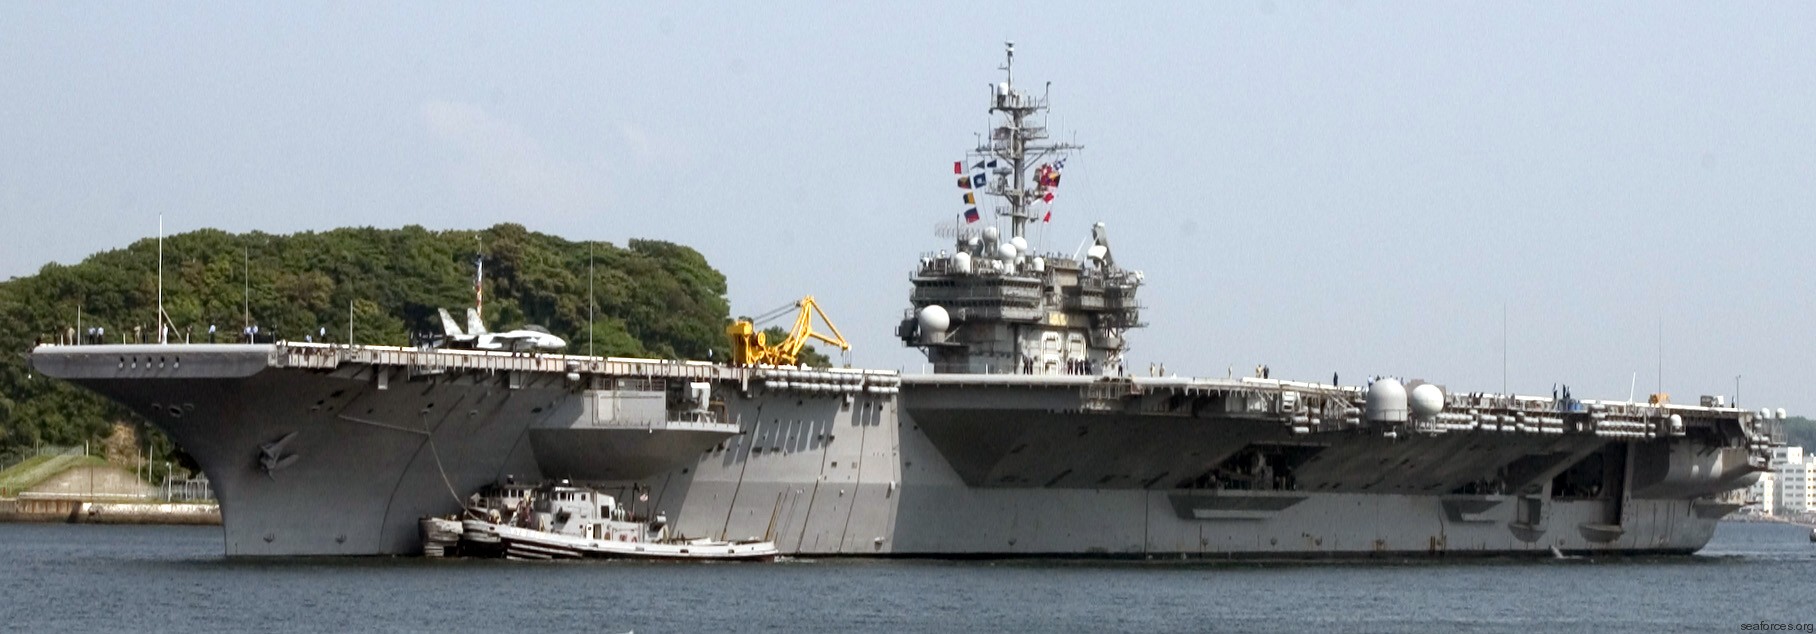 cv-63 uss kitty hawk aircraft carrier us navy 136